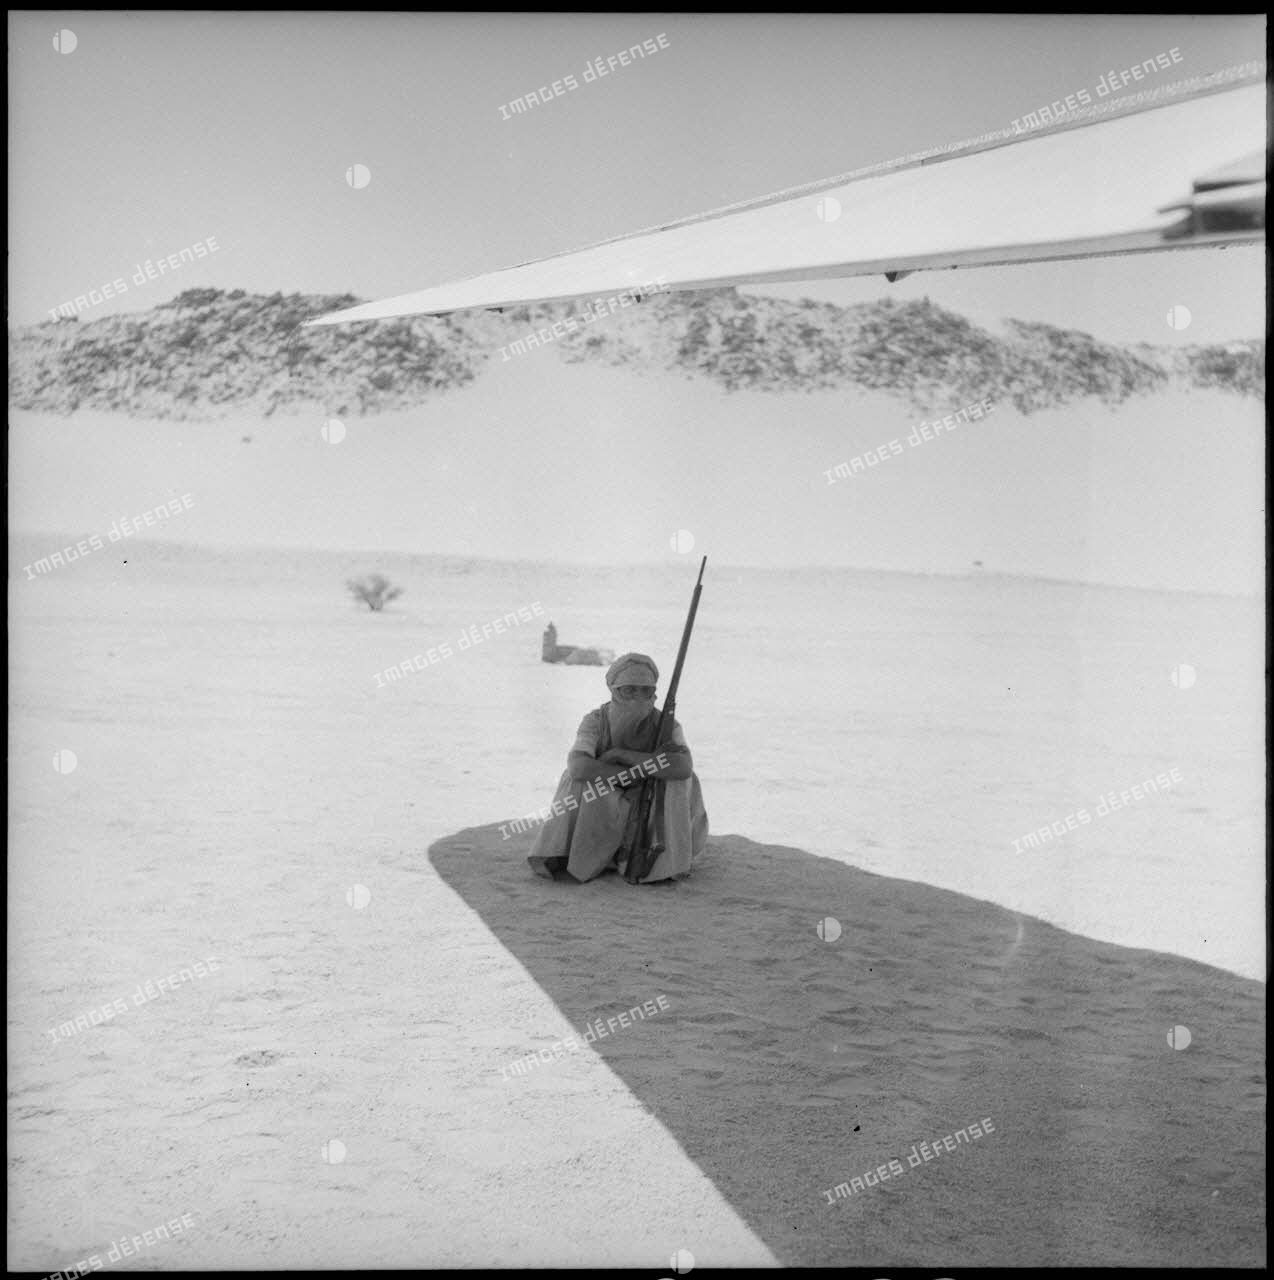 Le garde de l'avion de Max Lejeune veille à l'ombre d'une aile.